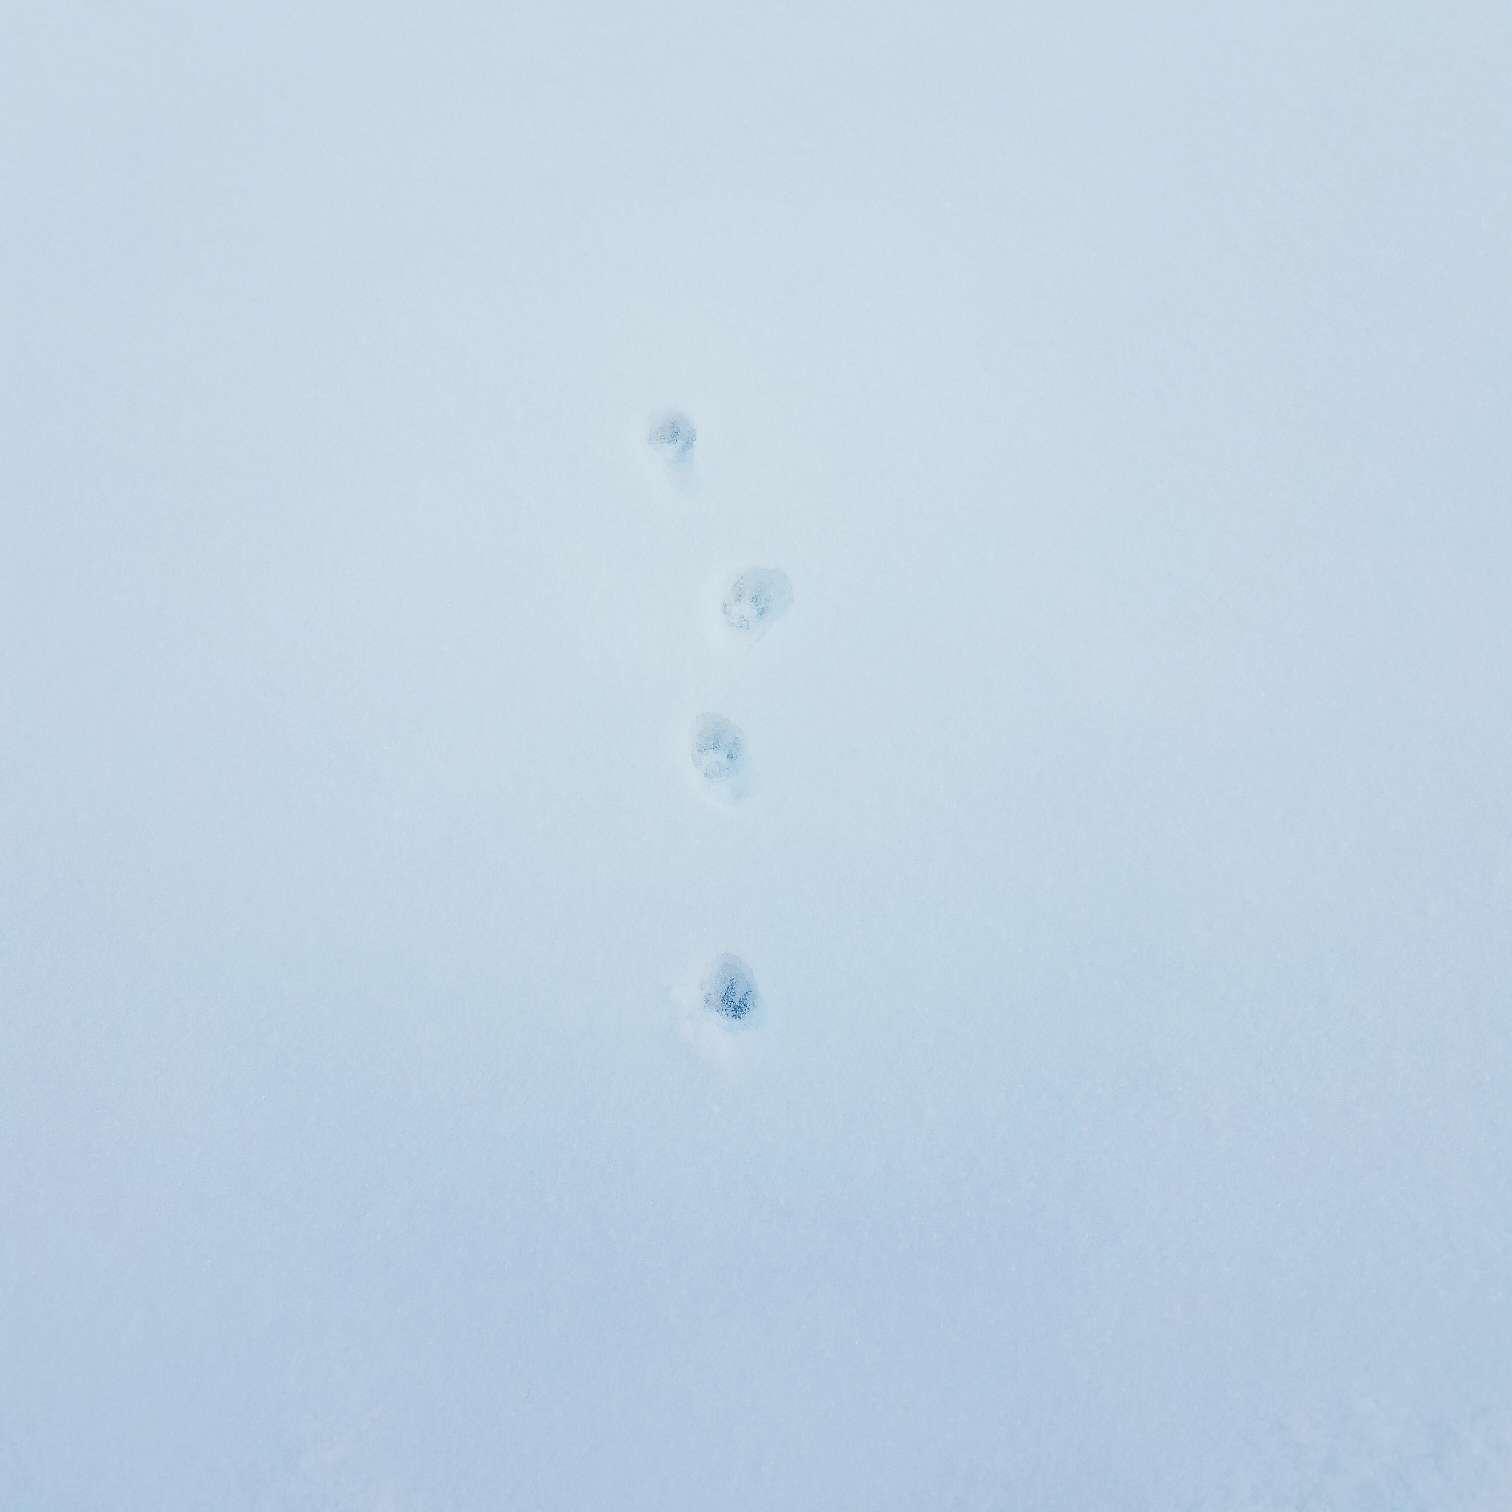 手机摄影# 雪地里的小猫脚印儿和卡在栏杆上的胖橘,不是最棒的照片